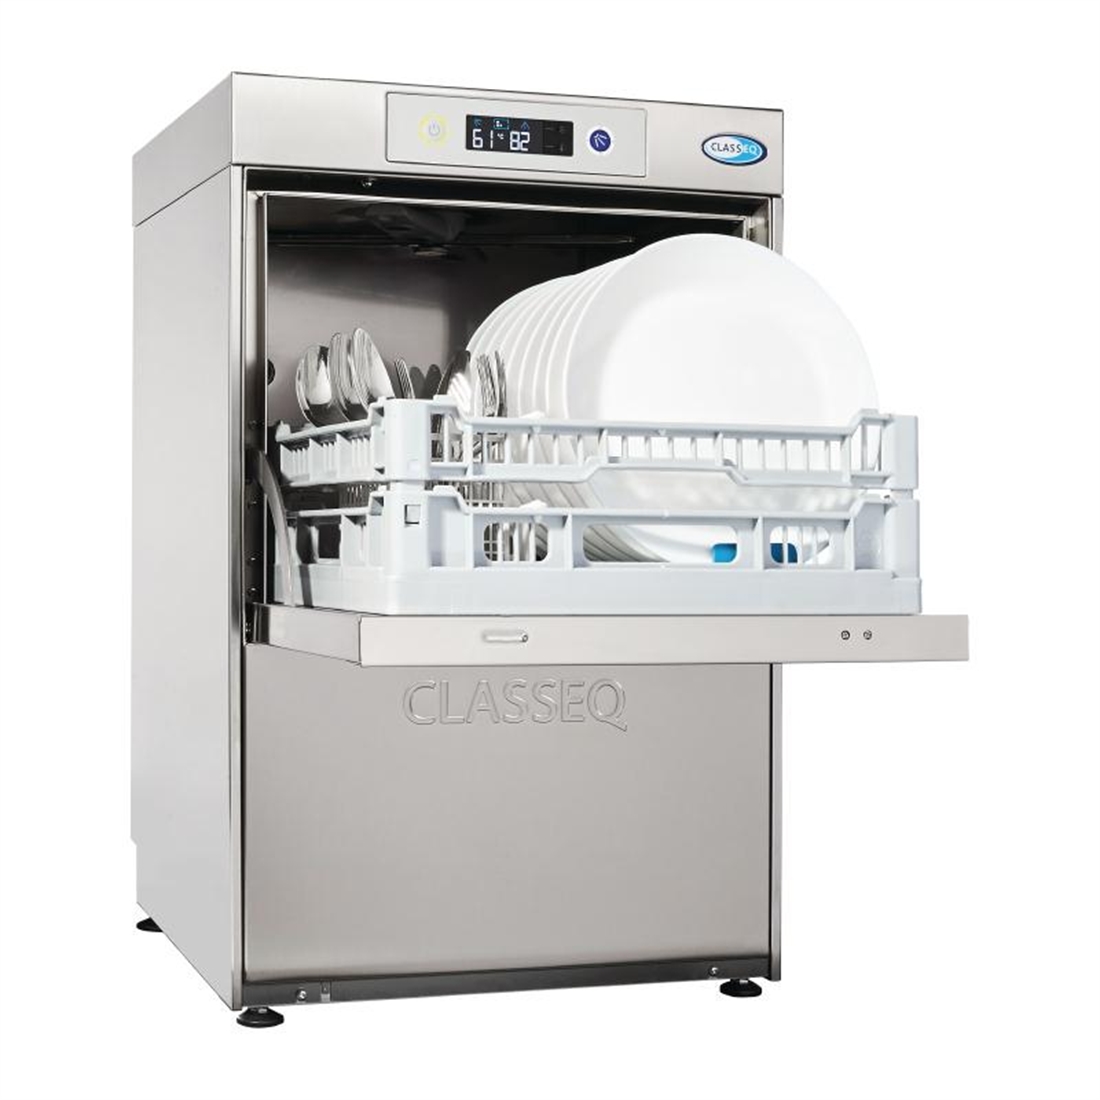 Classeq D400 Duo WS Dishwasher